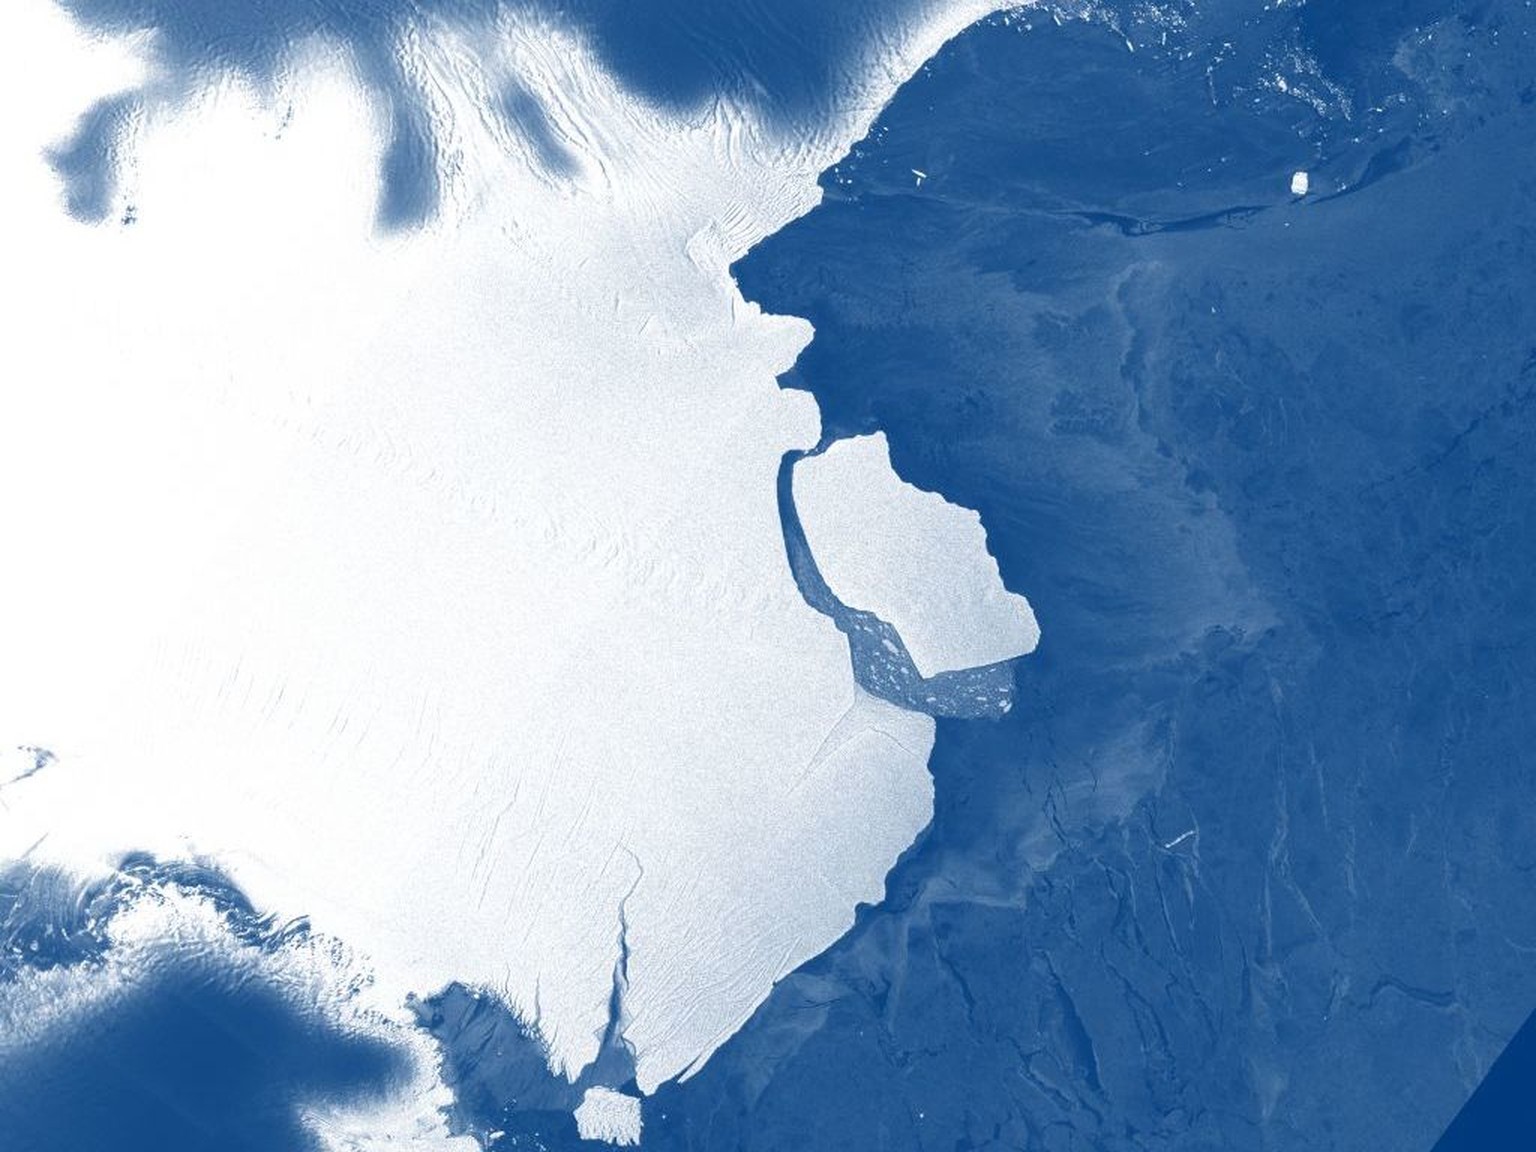 Ein Eisberg mit einer Fläche von rund 1600 Quadratkilometern ist vom Amery-Schelfeis in der Antarktis abgebrochen.